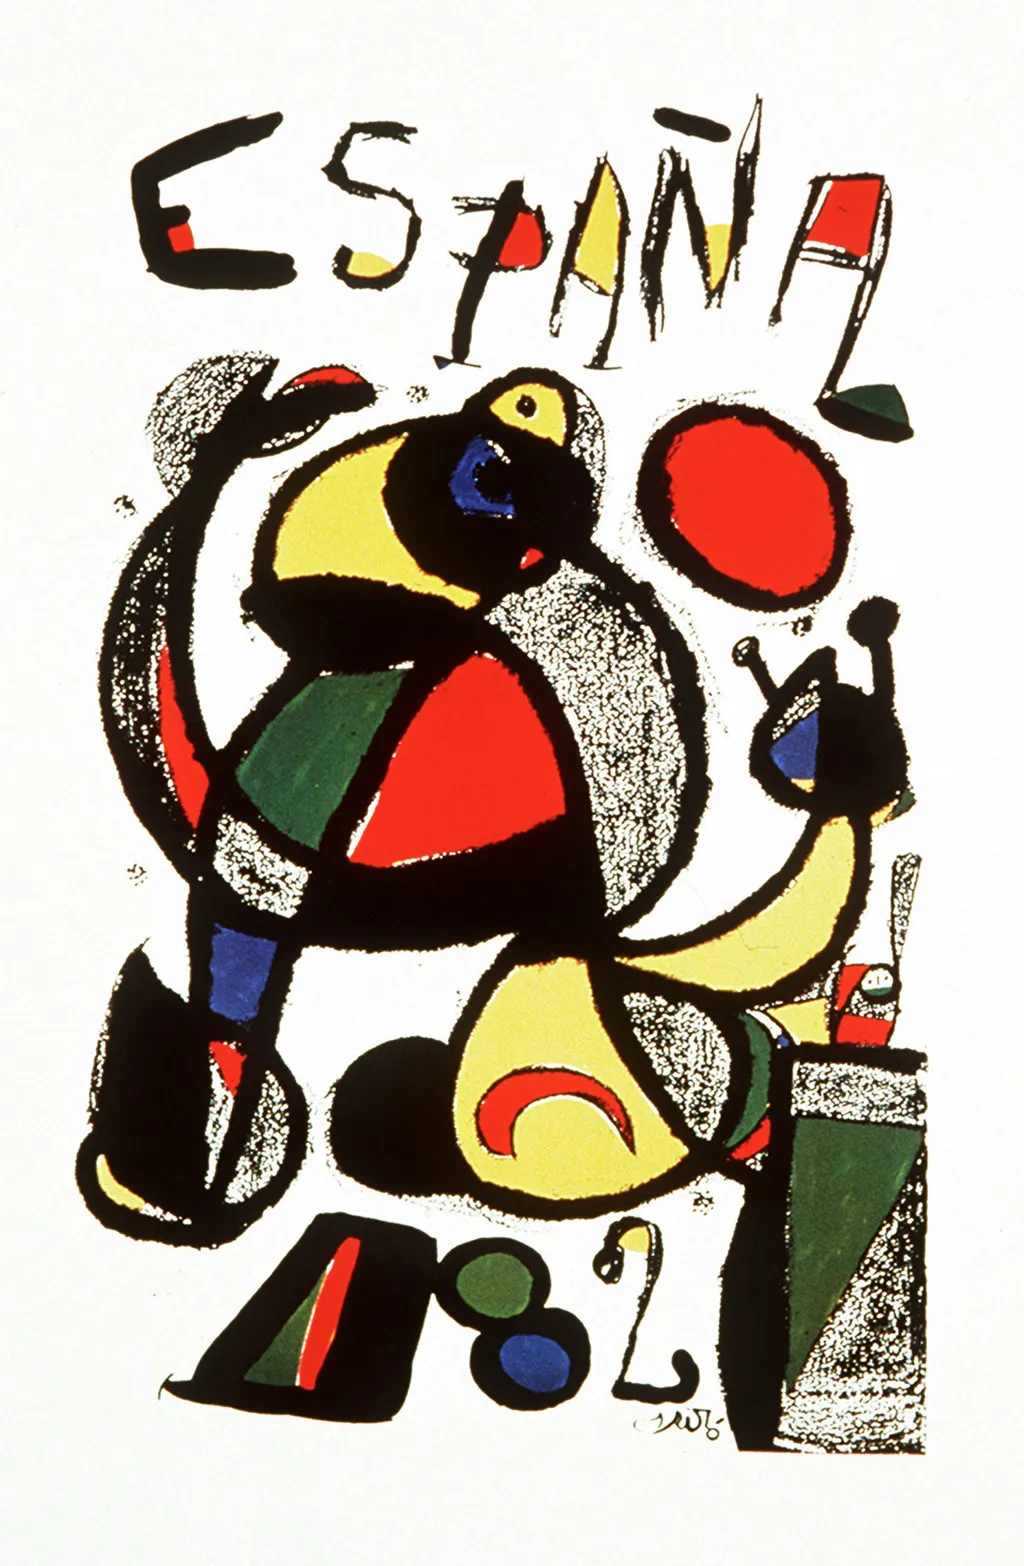 Labdarúgó-világbajnokság, labdarúgóvébé, futballvébé, labdarúgás, hivatalos plakát, poszter, 1982, Spanyolország 